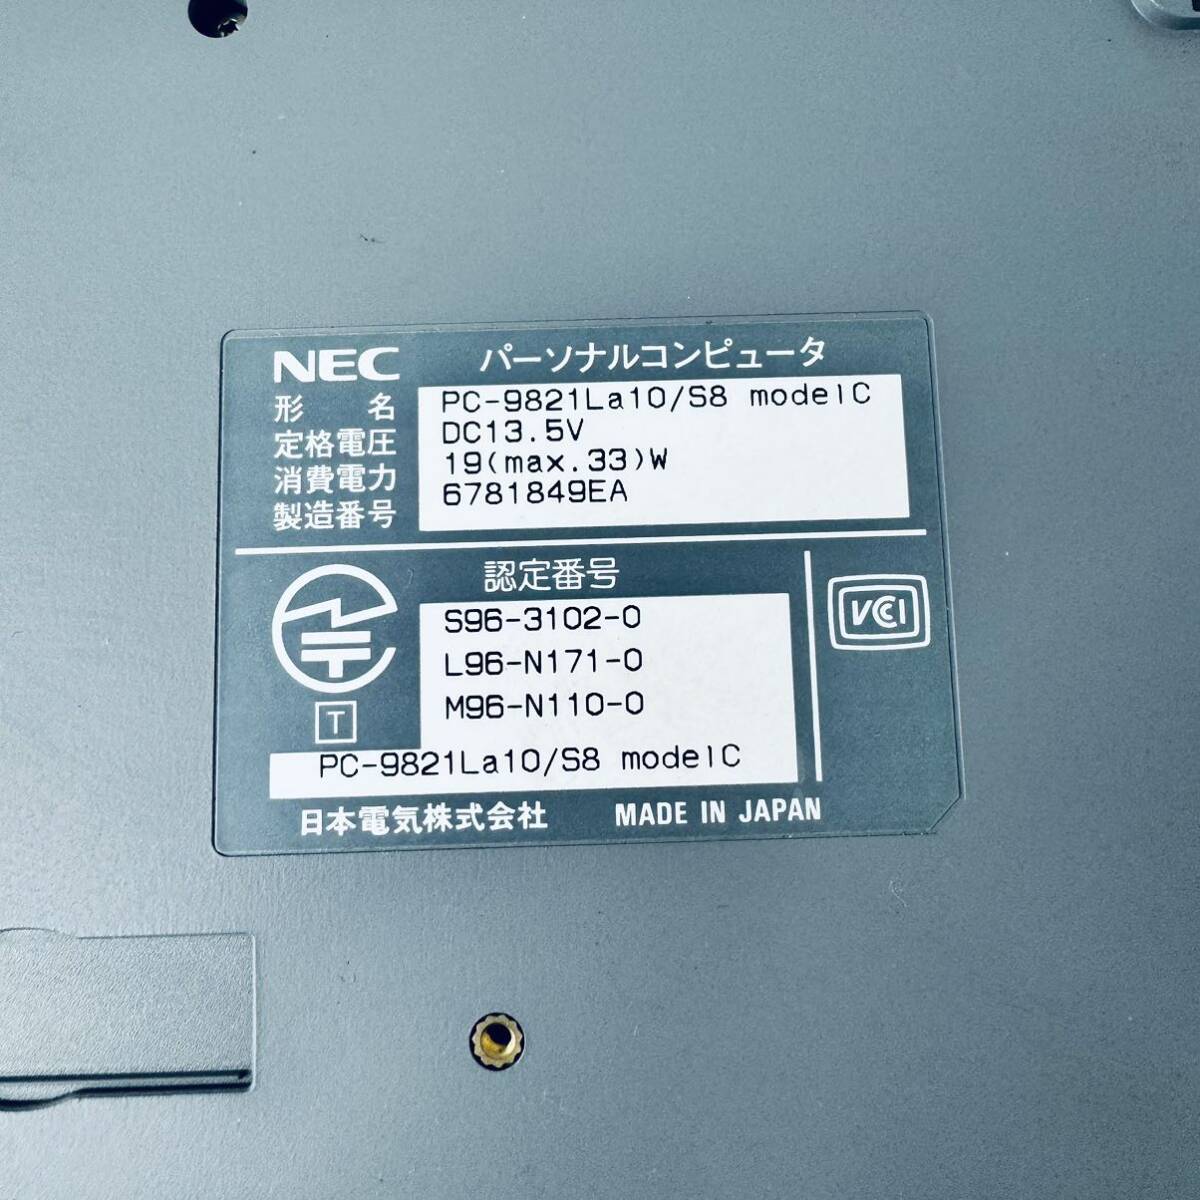 N98-11 NEC PC-9821La10/S8 HDD нет экран с дефектом работоспособность не проверялась 